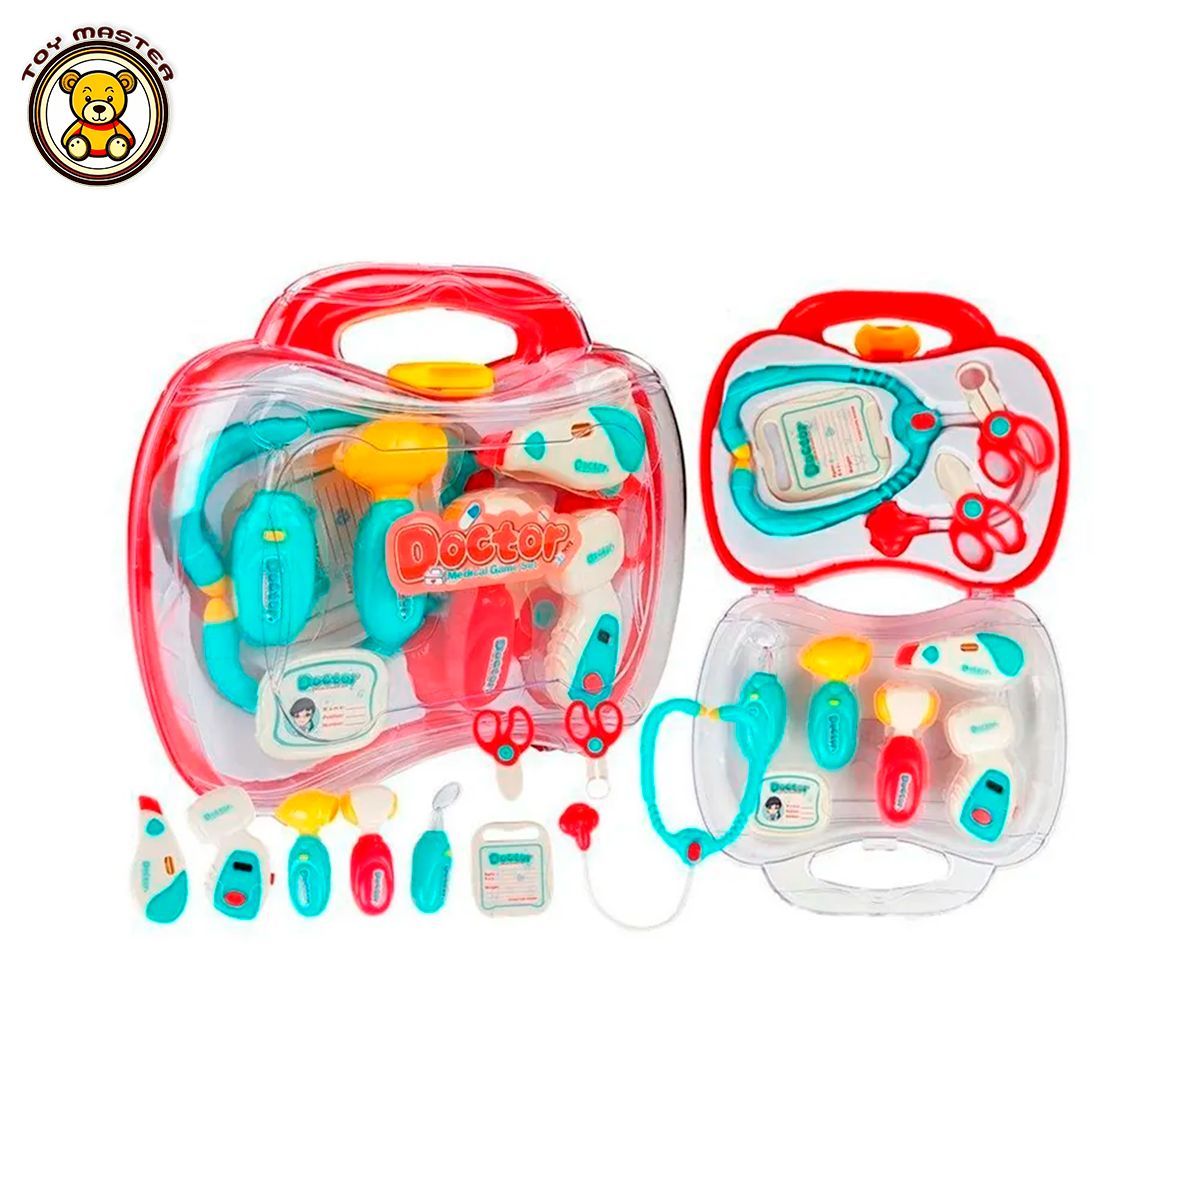 Игровой набор для врача Home Toy Юный медик, детские игрушки помощь как ее предлагать оказывать и принимать